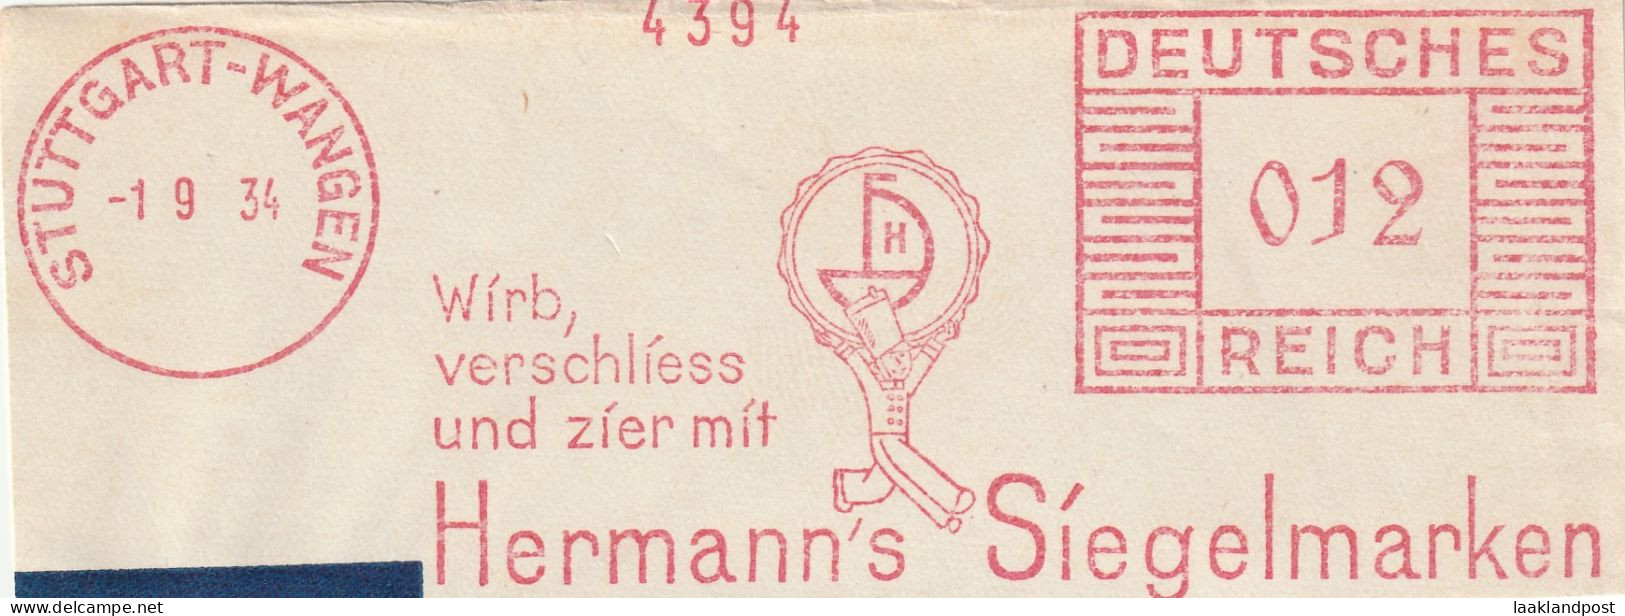 Deutsche Reichpost Nice Cut Meter Freistempel  Wirb, Verschliess Und Zier Miot Hermann's Siegelmarken, Stuttgart-Wangen - Machines à Affranchir